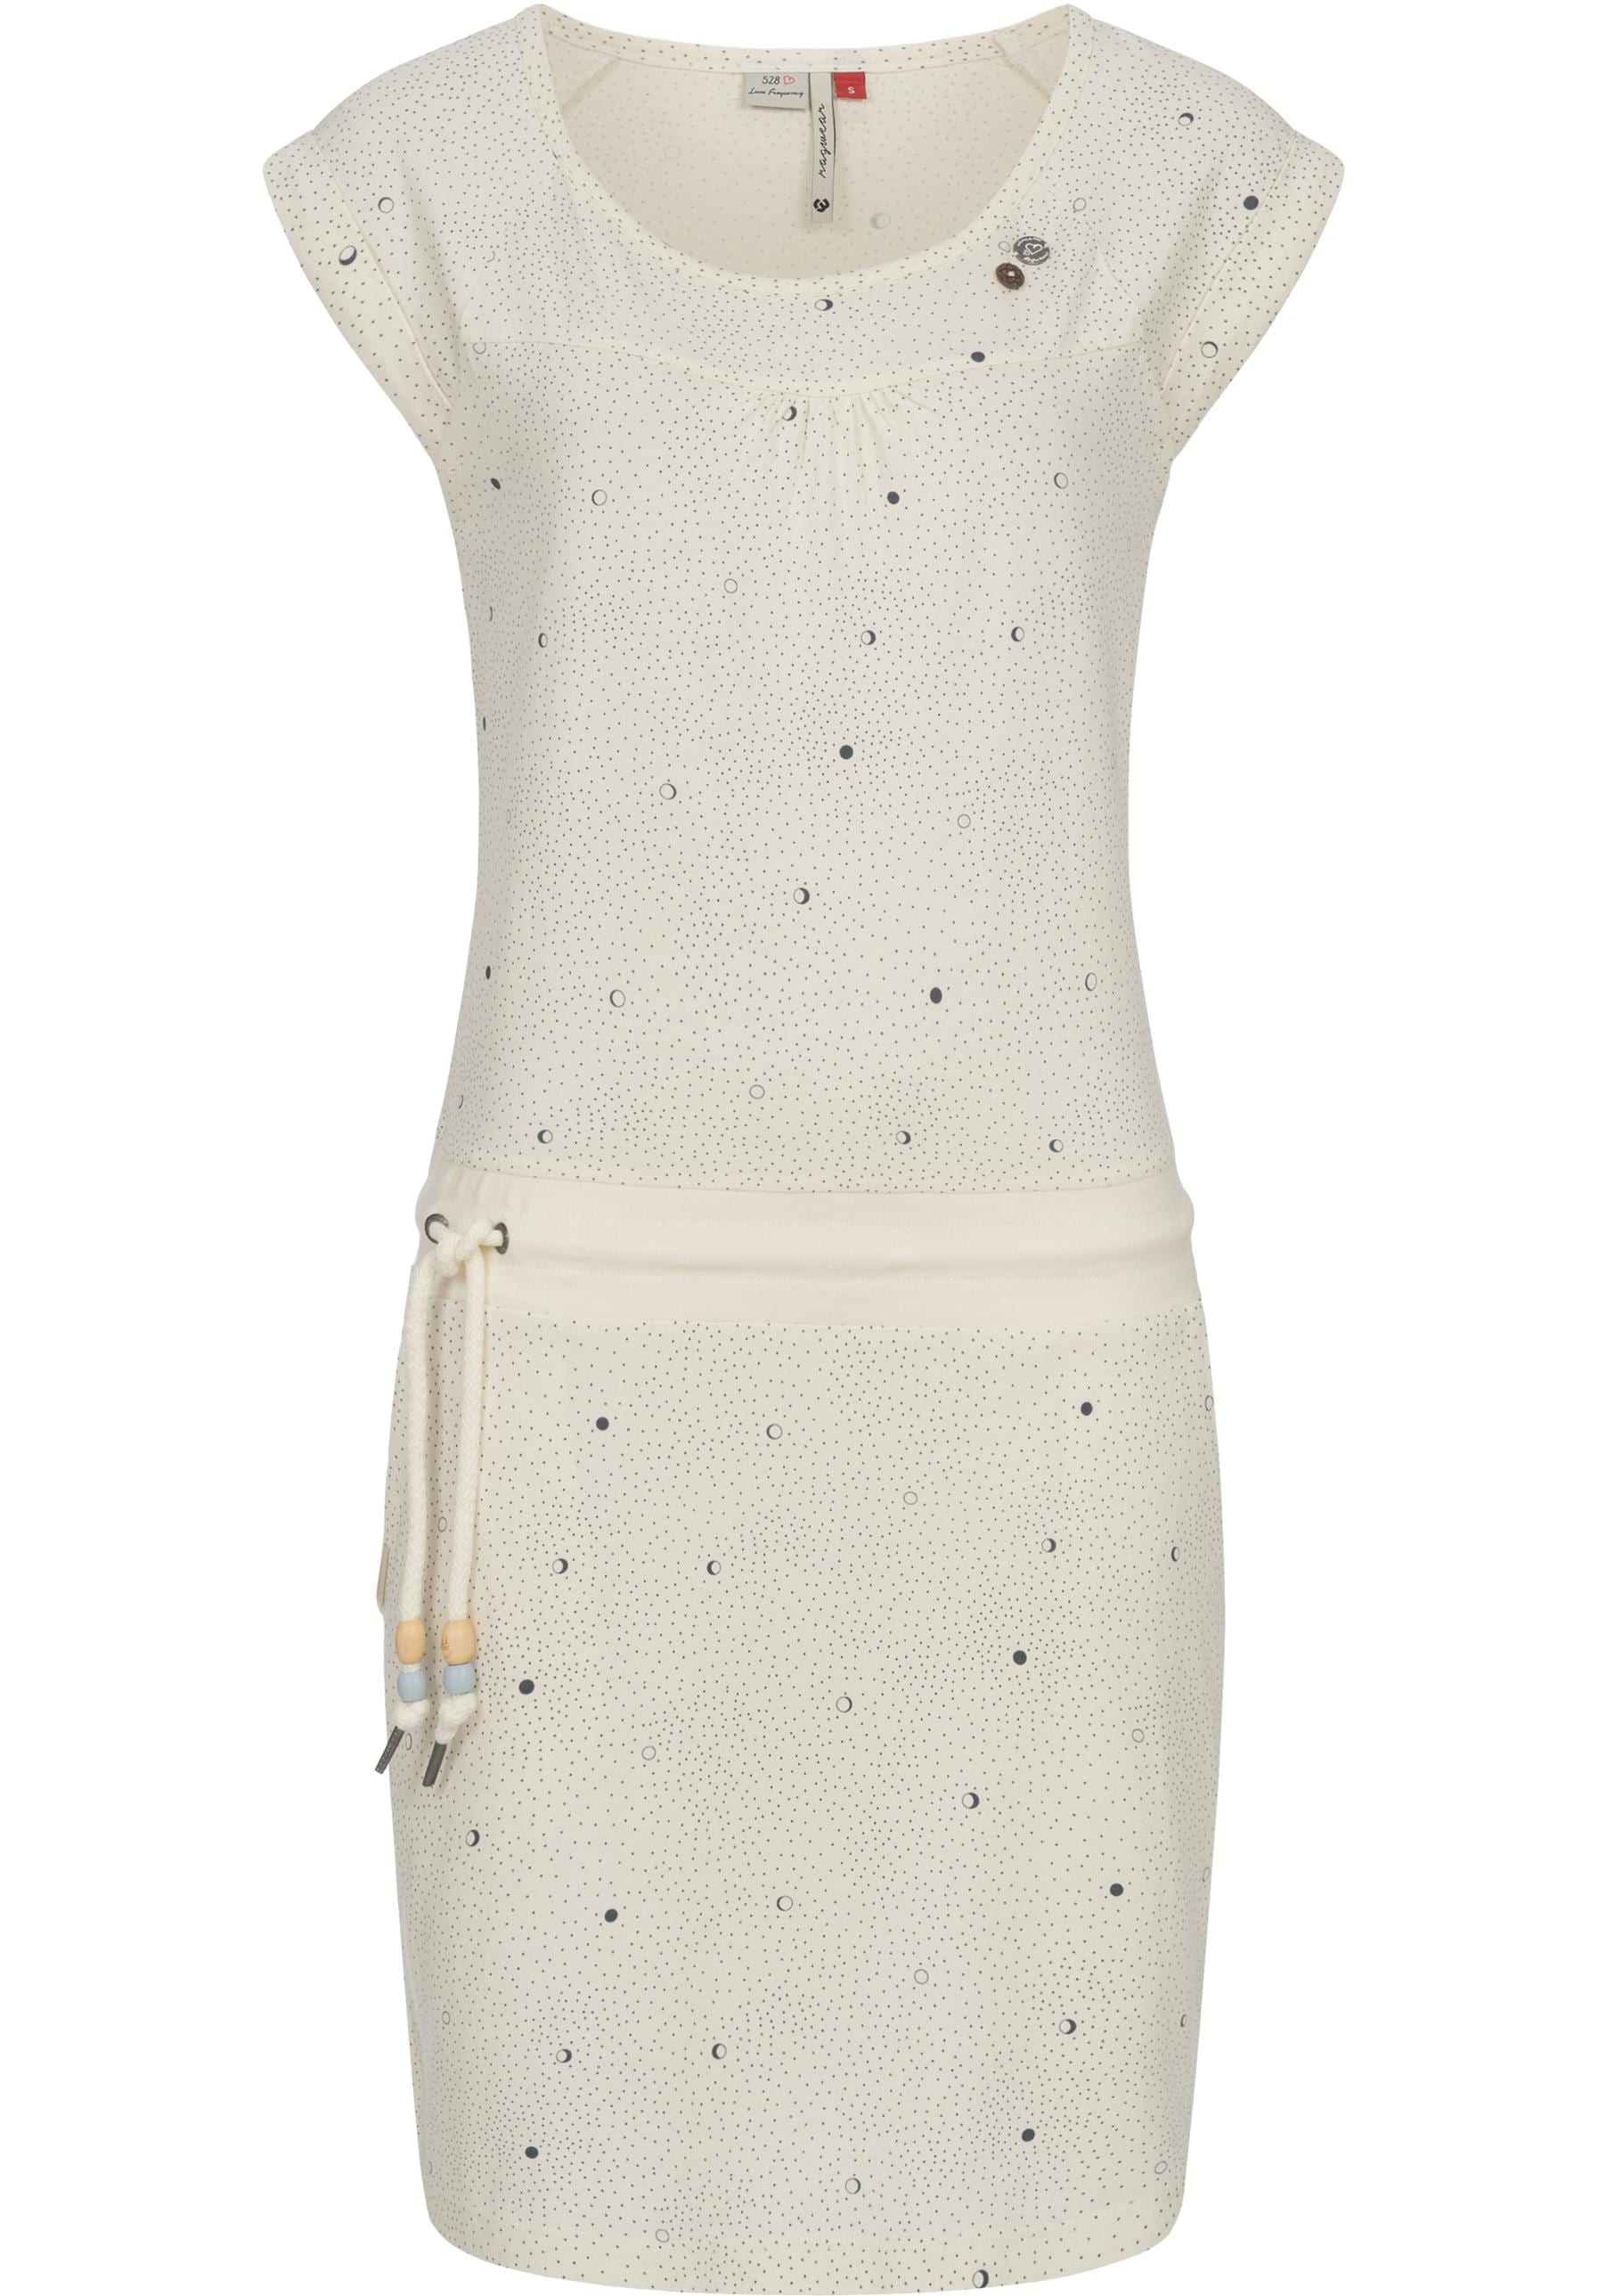 Ragwear Sommerkleid "Penelope Print B Intl.", leichtes Strand-Kleid mit stylischem Print von Ragwear